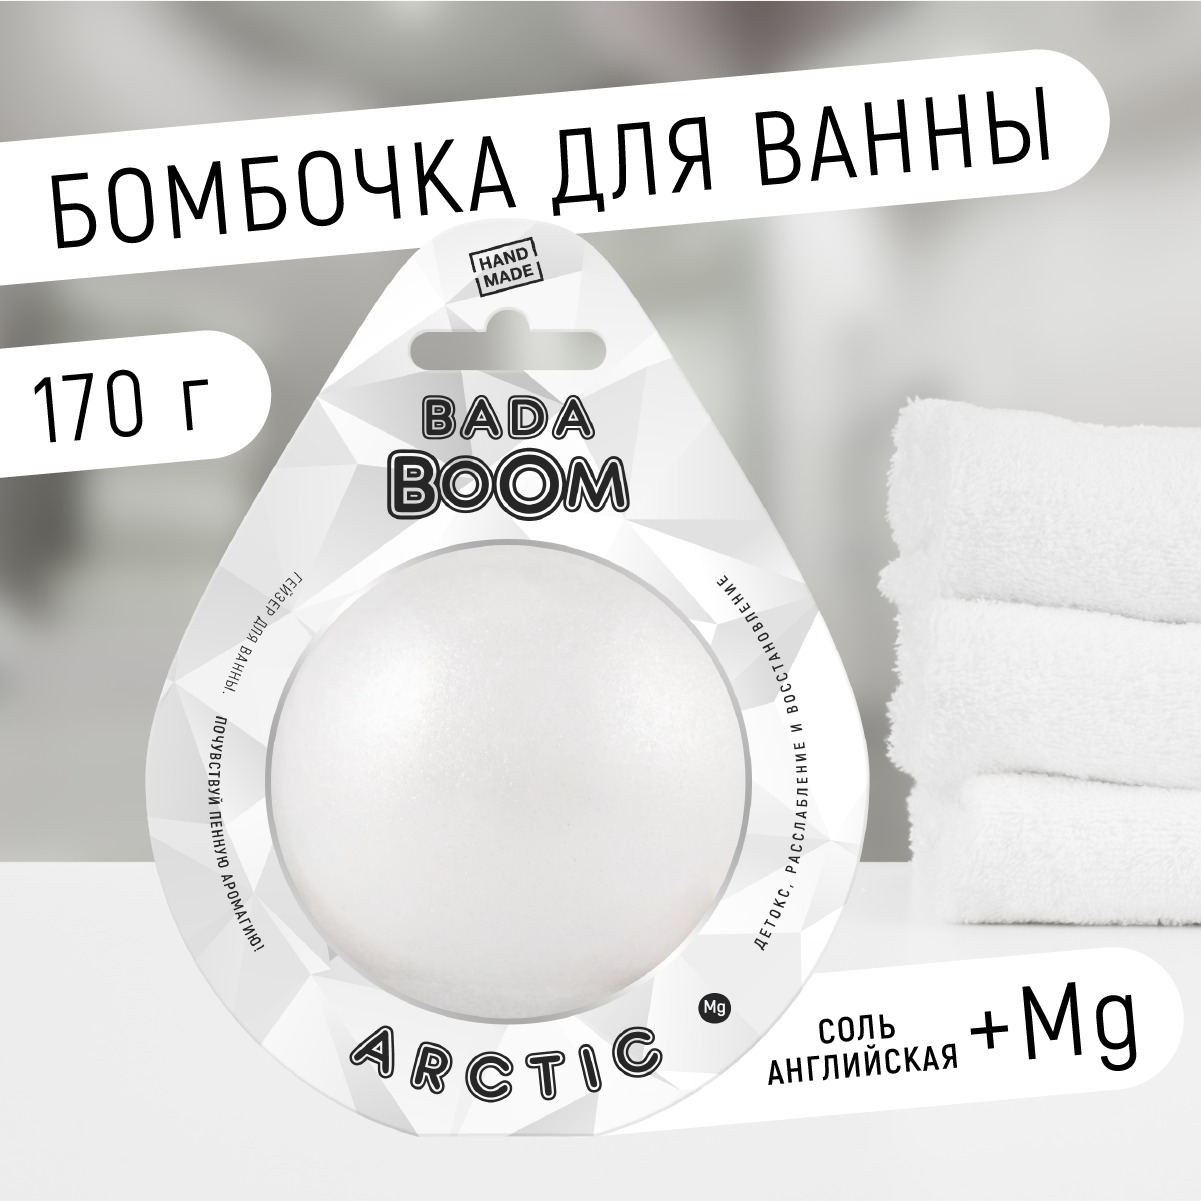 Бомбочка для ванны Arctic без запаха 170 г family forever factory соль английская эпсома для ванны расслабление антистресс organic boom 300